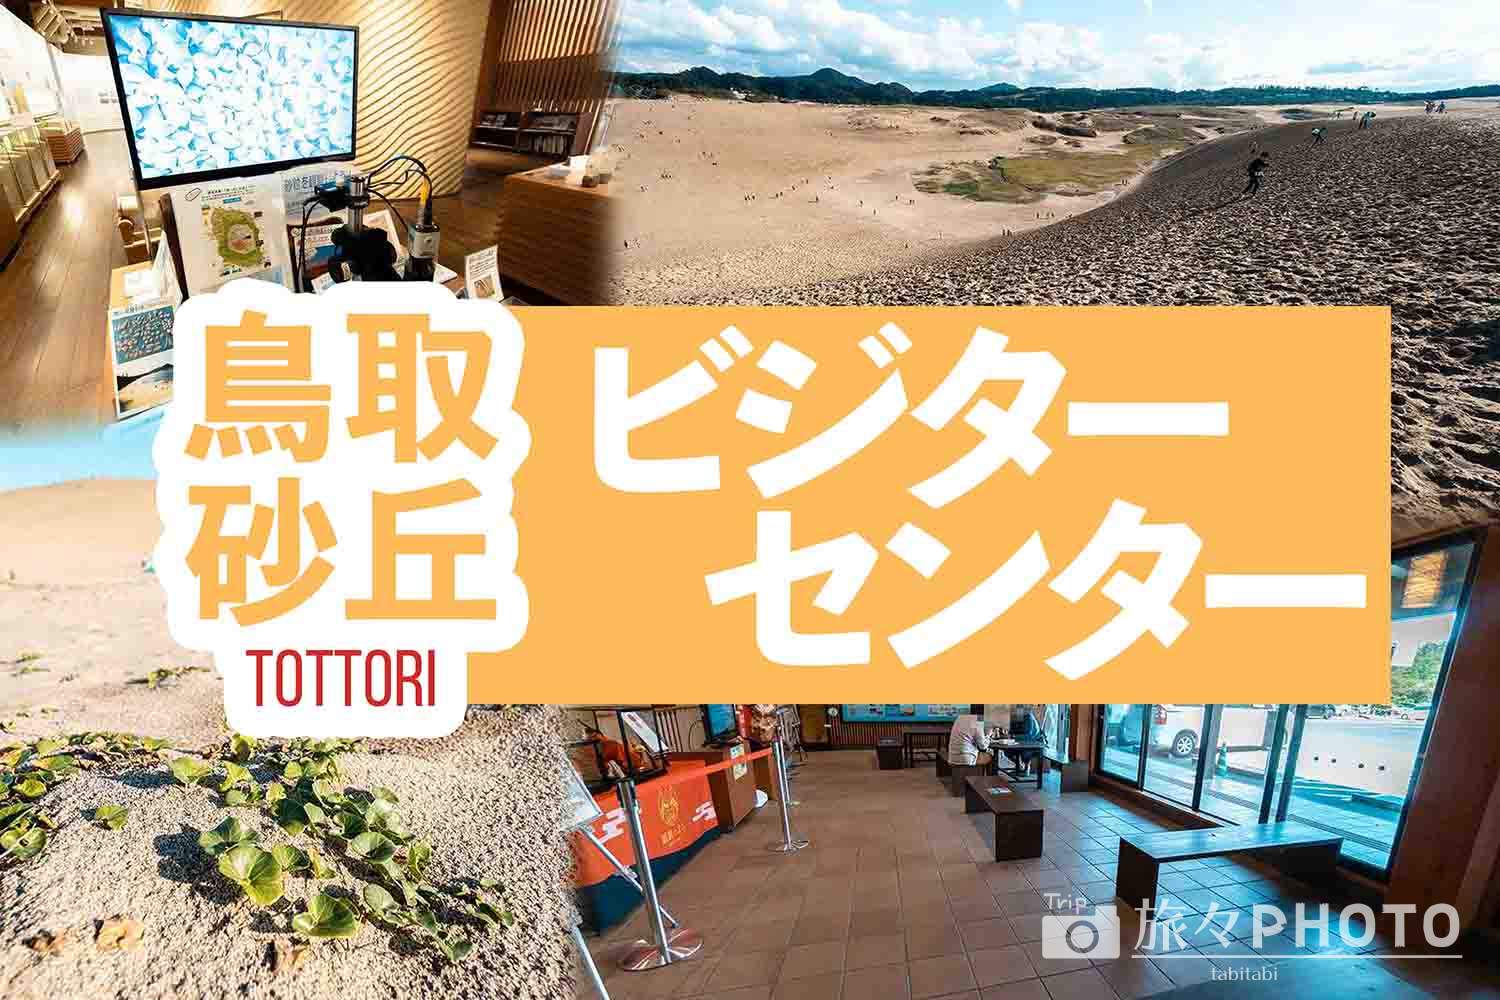 鳥取砂丘ビジターセンターアイキャッチ画像